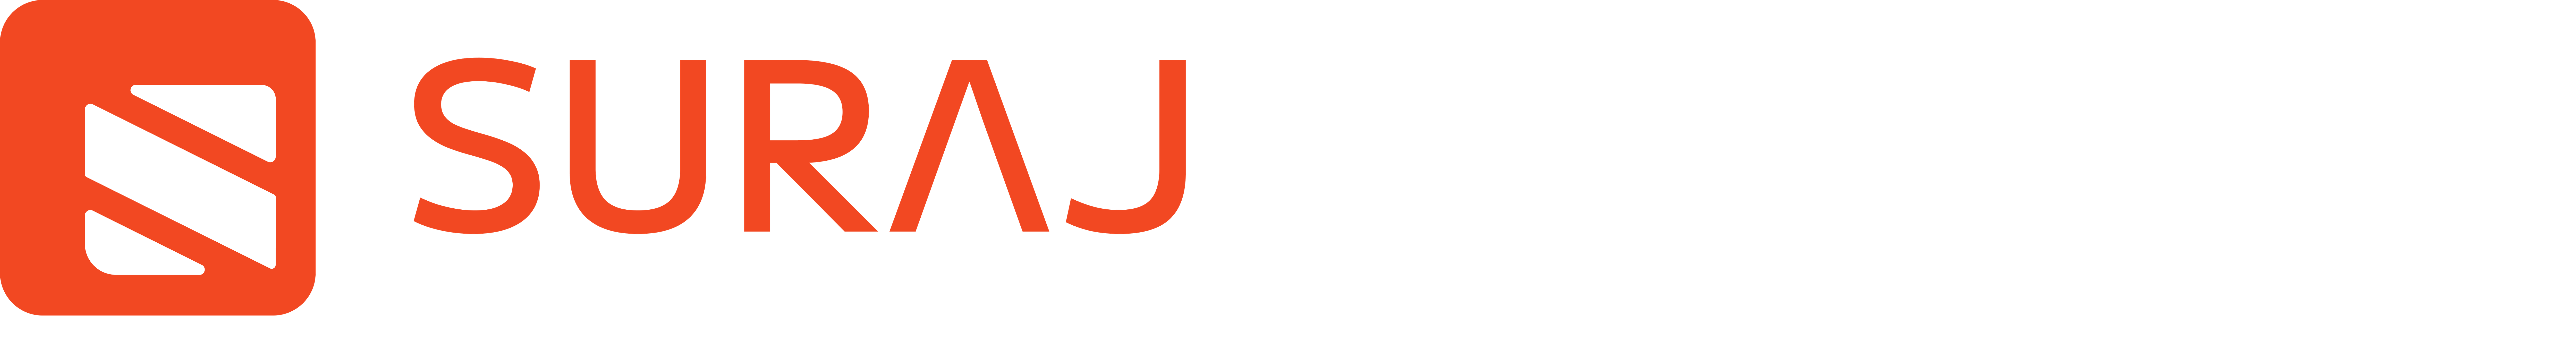 Surajfasttech Logo